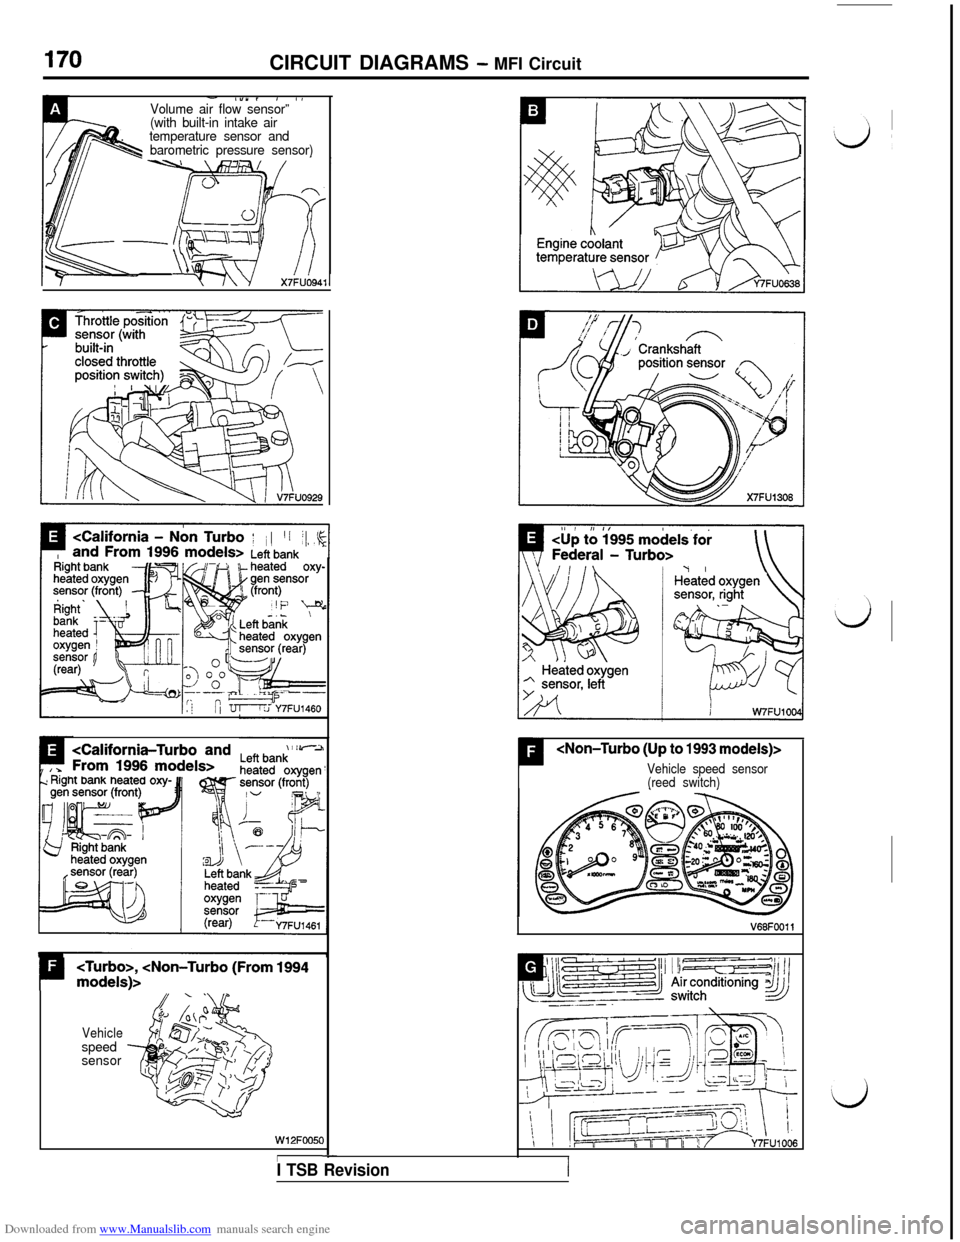 MITSUBISHI 3000GT 1994 2.G Workshop Manual Downloaded from www.Manualslib.com manuals search engine CIRCUIT DIAGRAMS - MFI Circuit
- l”“, , IVolume air flow sensor”’.(with built-in intake air
temperature sensor and
barometric pressure 